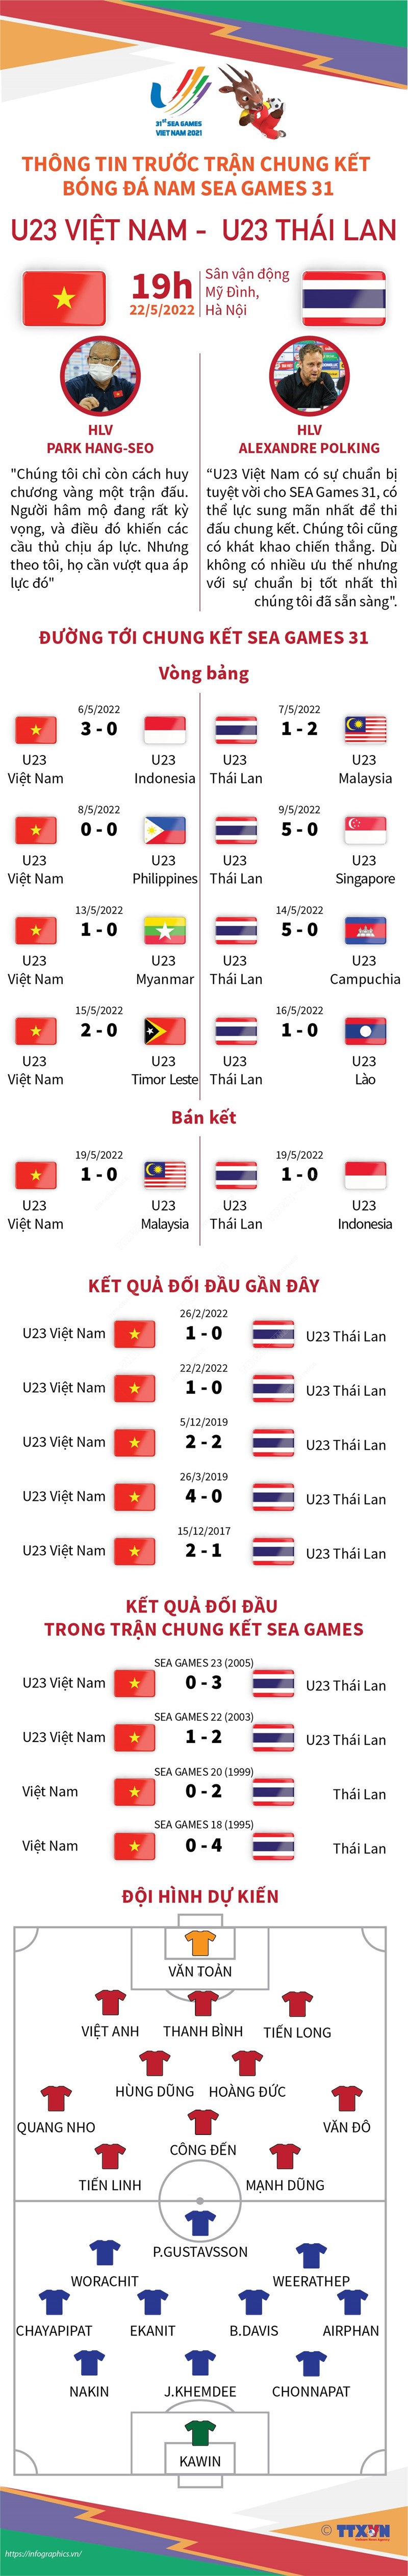 Thông tin trước trận chung kết bóng đá nam SEA Games 31 giữa U23 Việt Nam và U23 Thái Lan